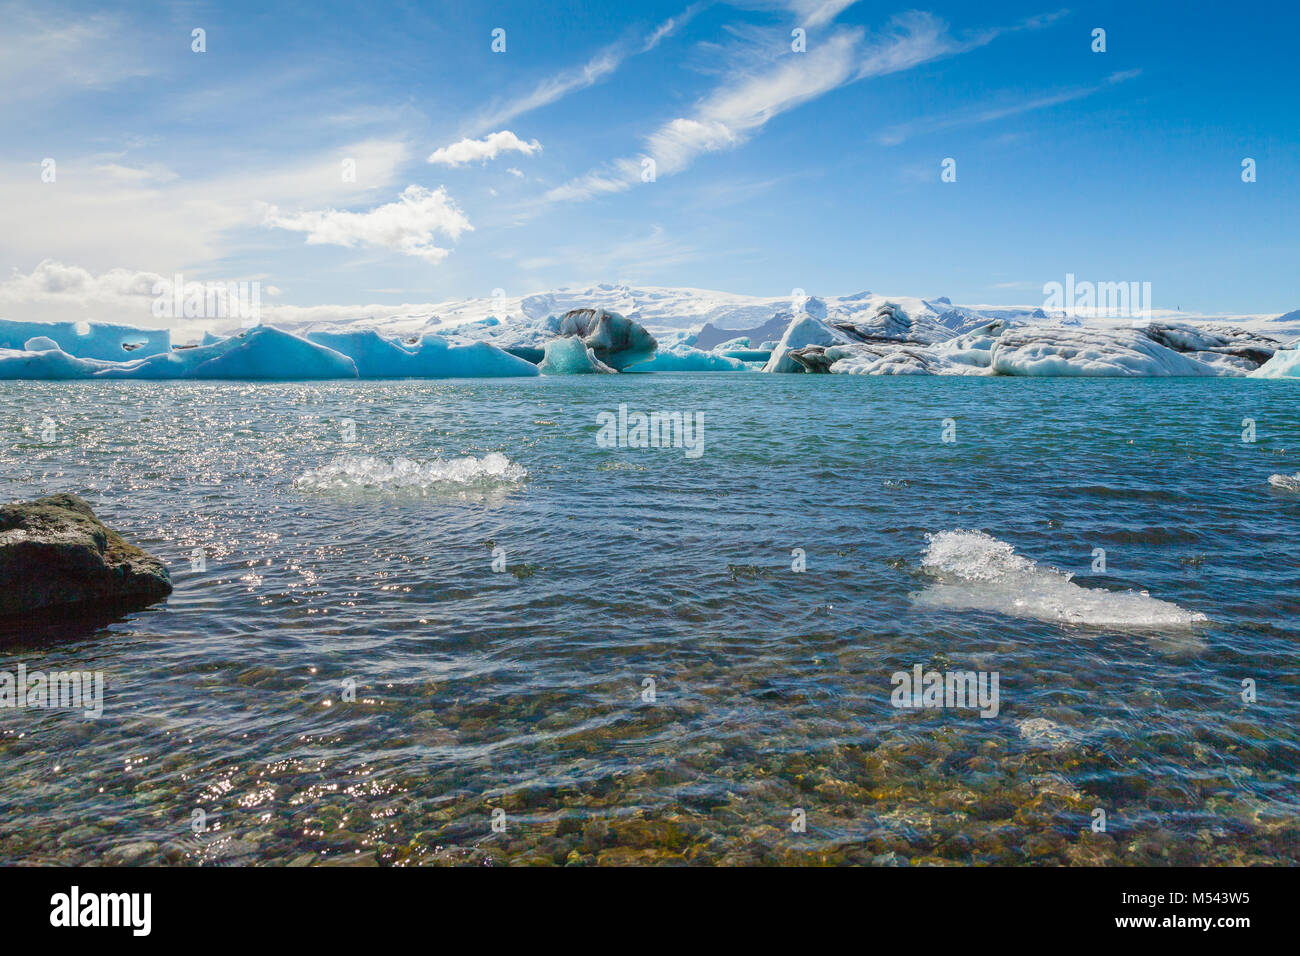 Le lac jokulsarlon Islande vue d'icebergs Banque D'Images